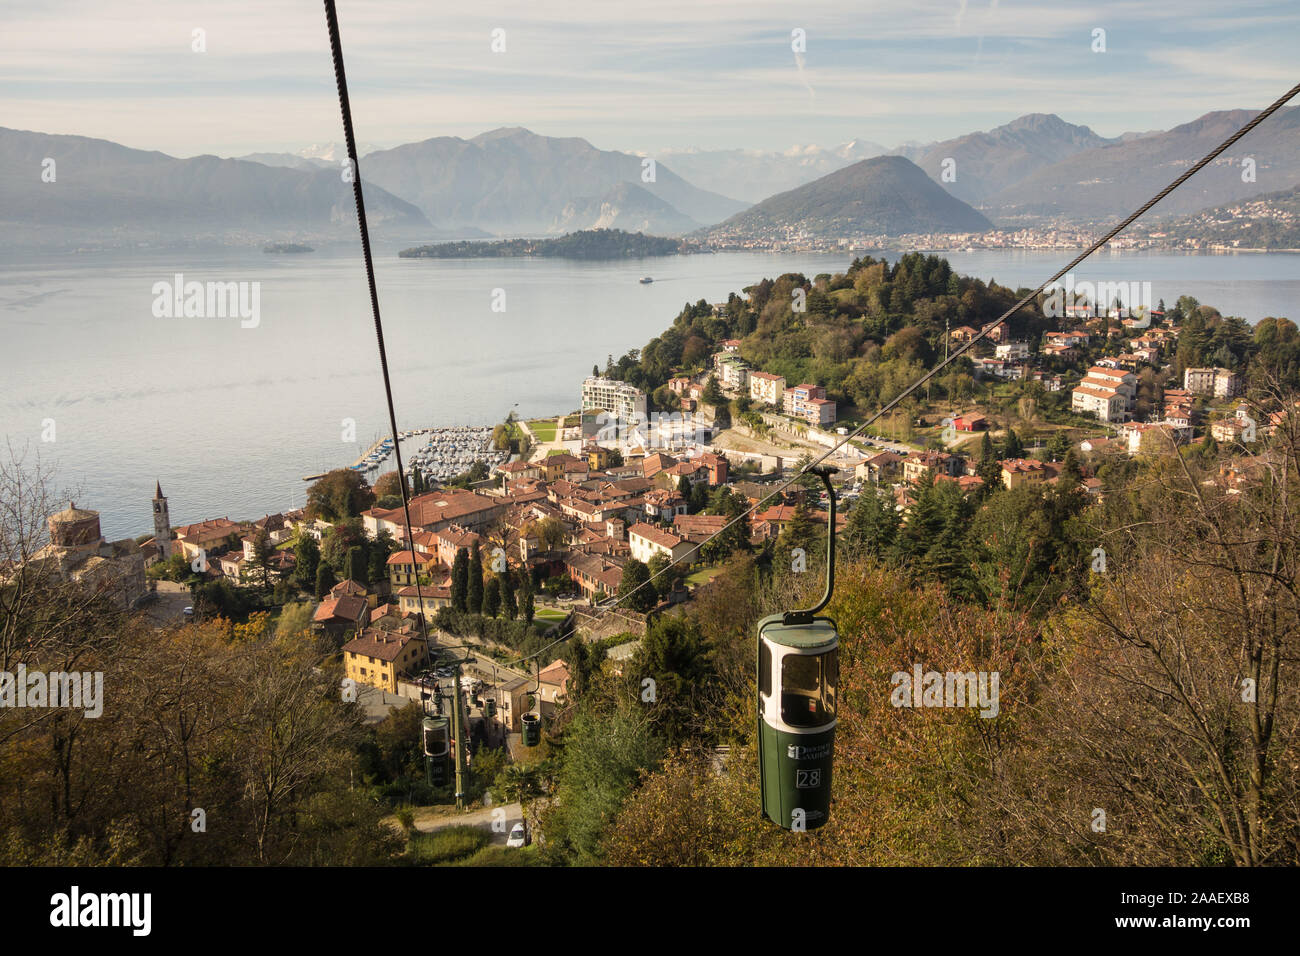 La vista sulla corsa in funicolare tra la città di Laveno-Mombello alla sommità del sasso del ferro di montagna, Italia. Il Lago Maggiore può essere visto qui sotto. Foto Stock